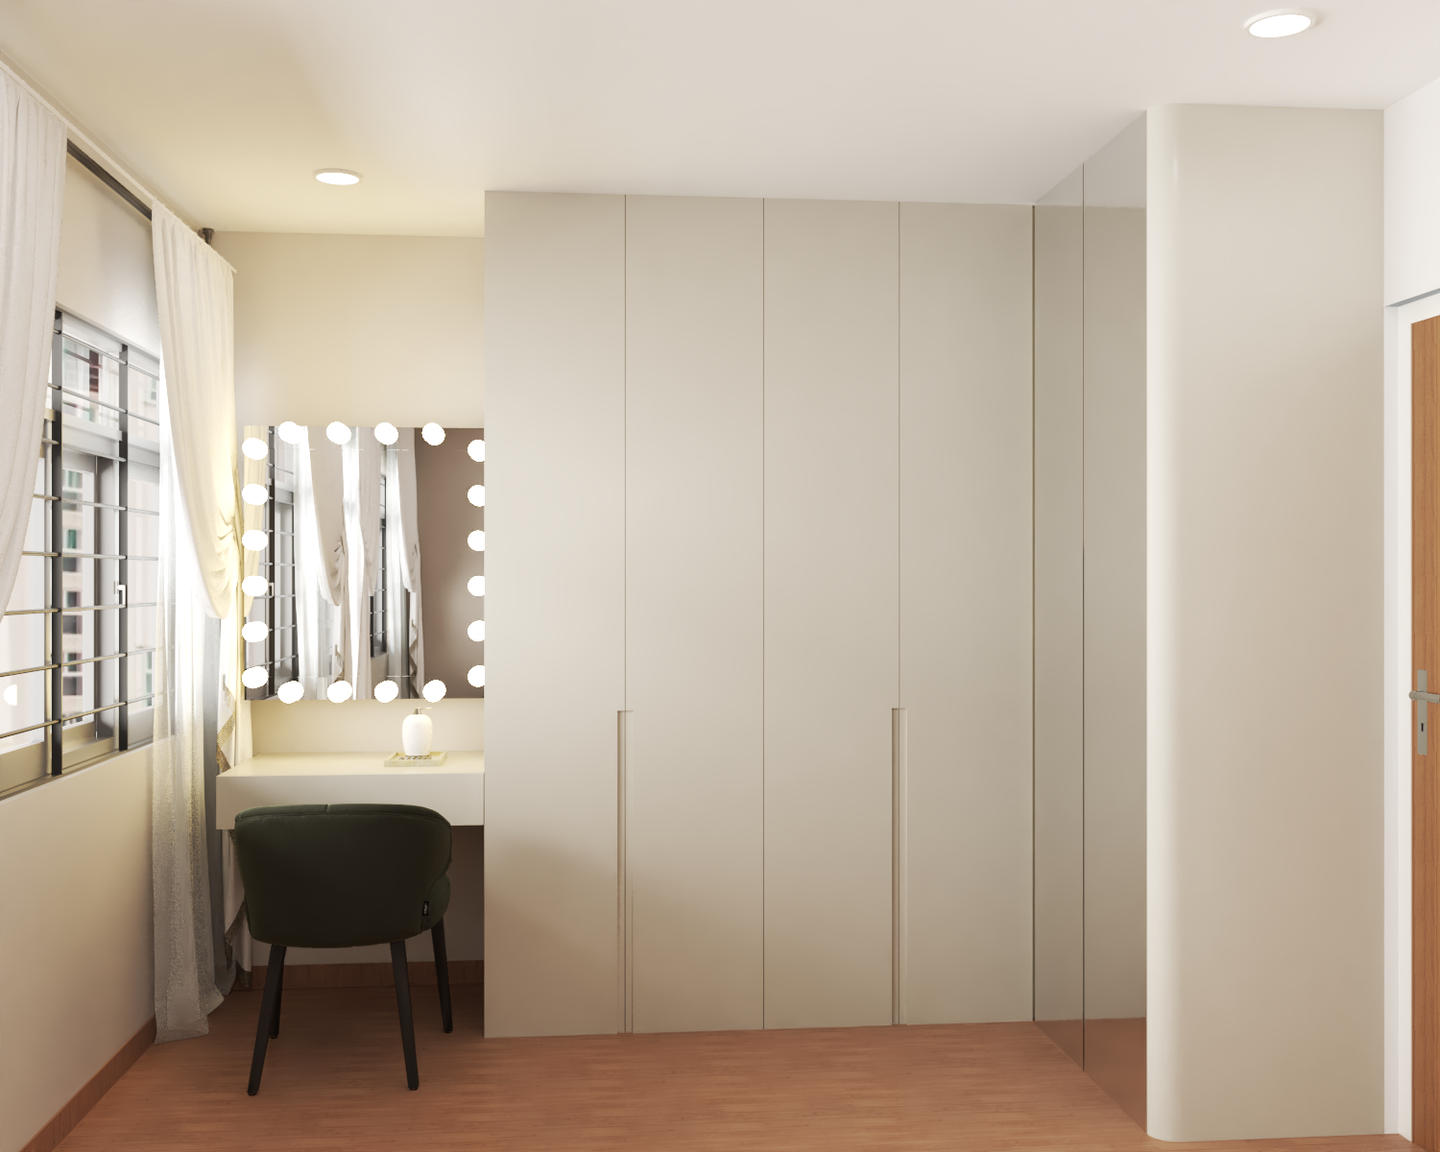 L-Shaped Modern Wardrobe Design For Bedroom